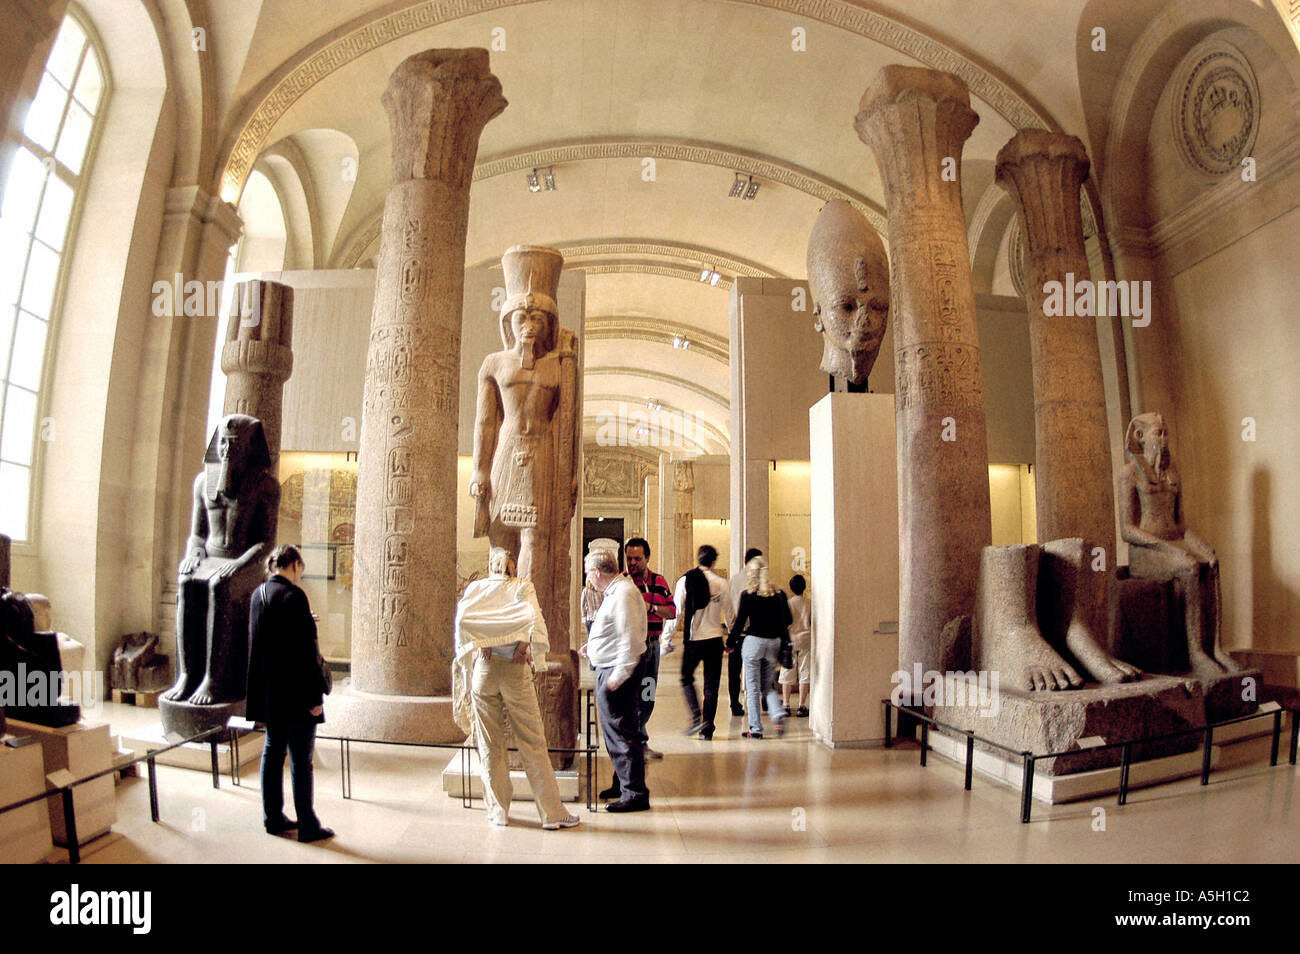 PARIS Francia, Museo del Louvre turistas que visitan el templo de la colección del departamento egipcio de Louxor, Egipto, alto museo de arte escultura estatuas Foto de stock